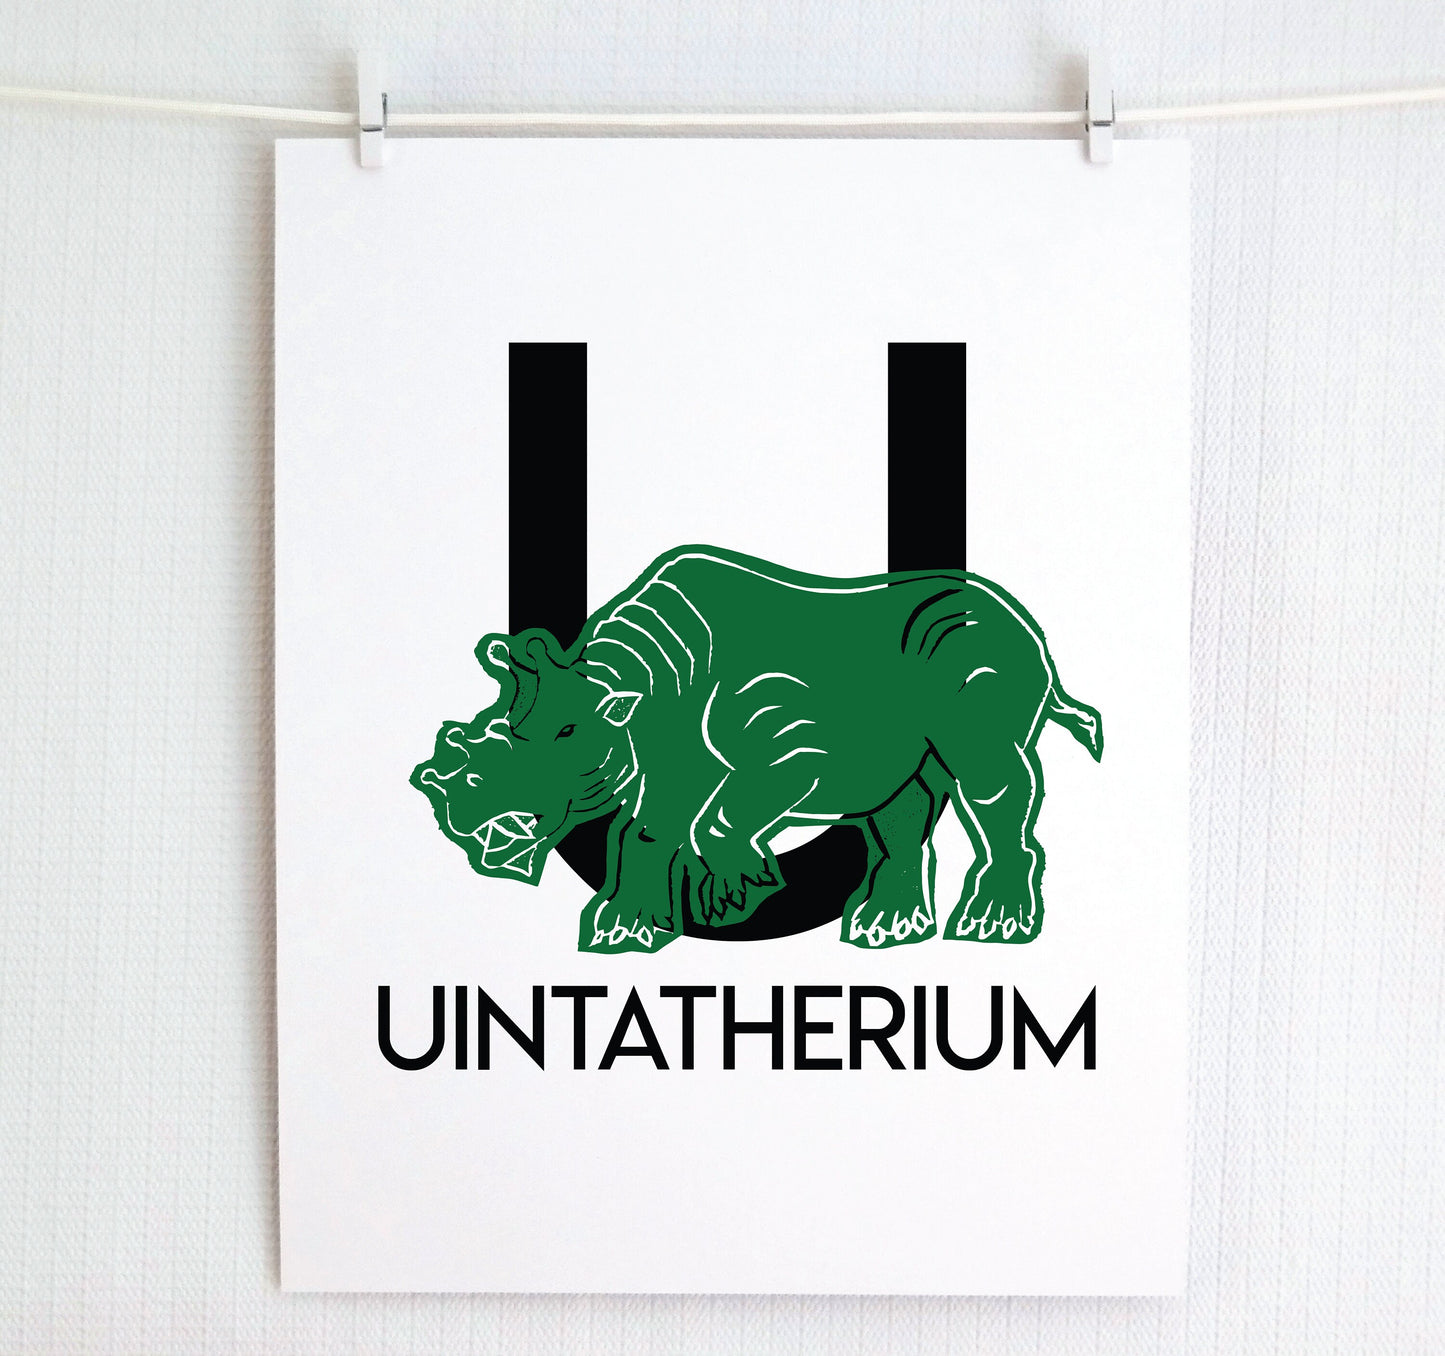 U is for Unitatherium